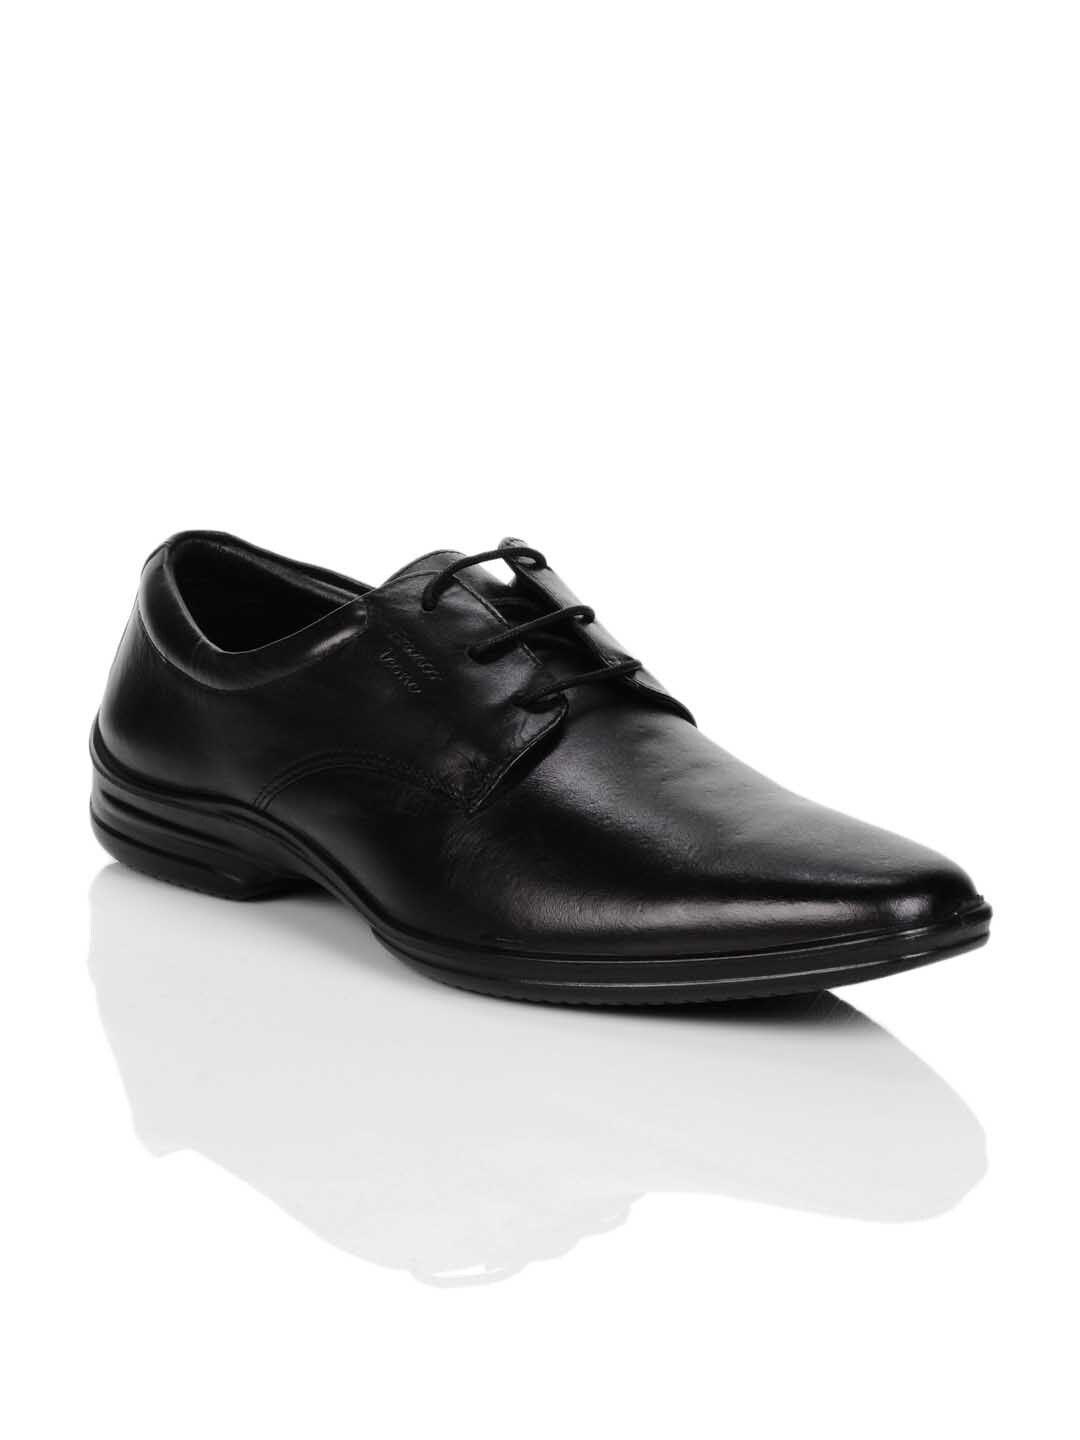 Franco Leone Men Black Formal Shoes